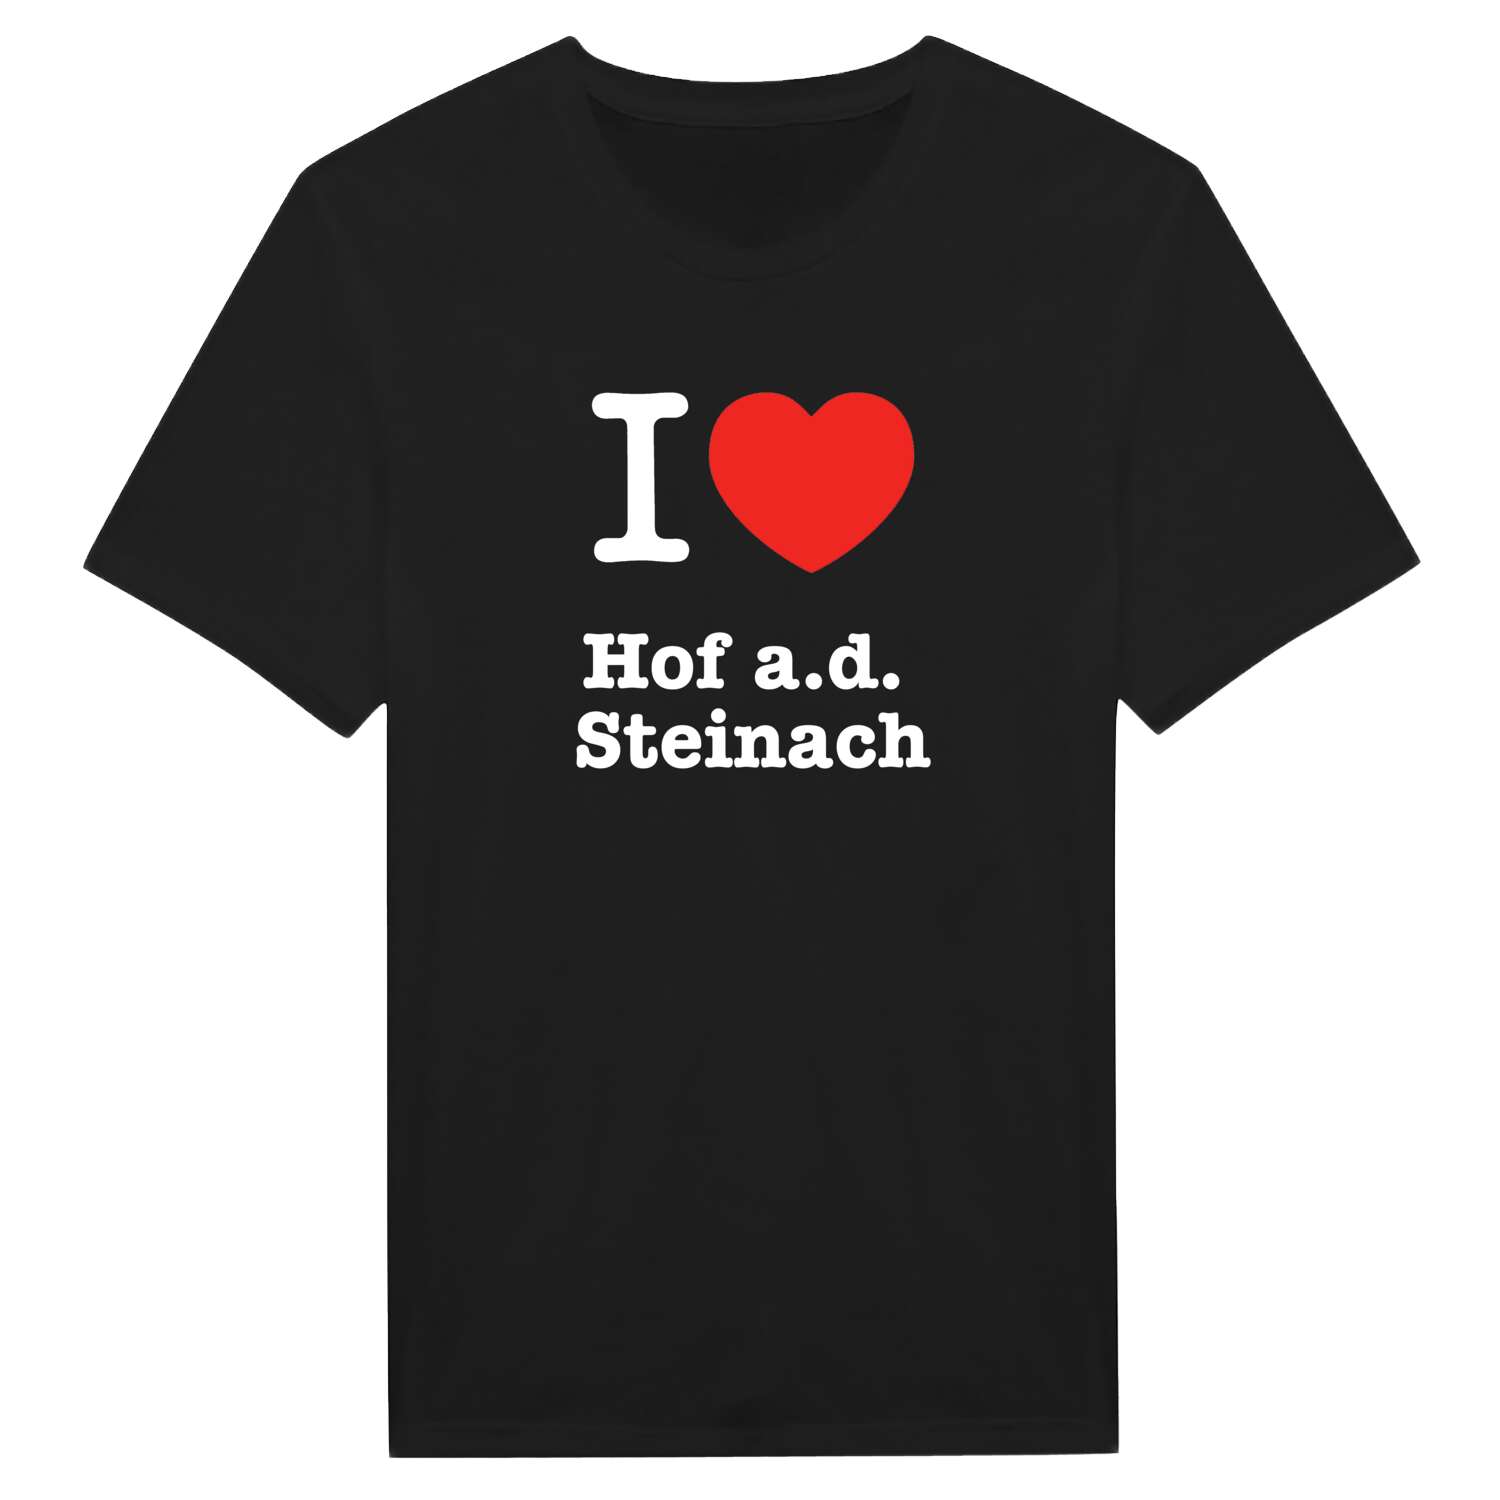 Hof a.d. Steinach T-Shirt »I love«